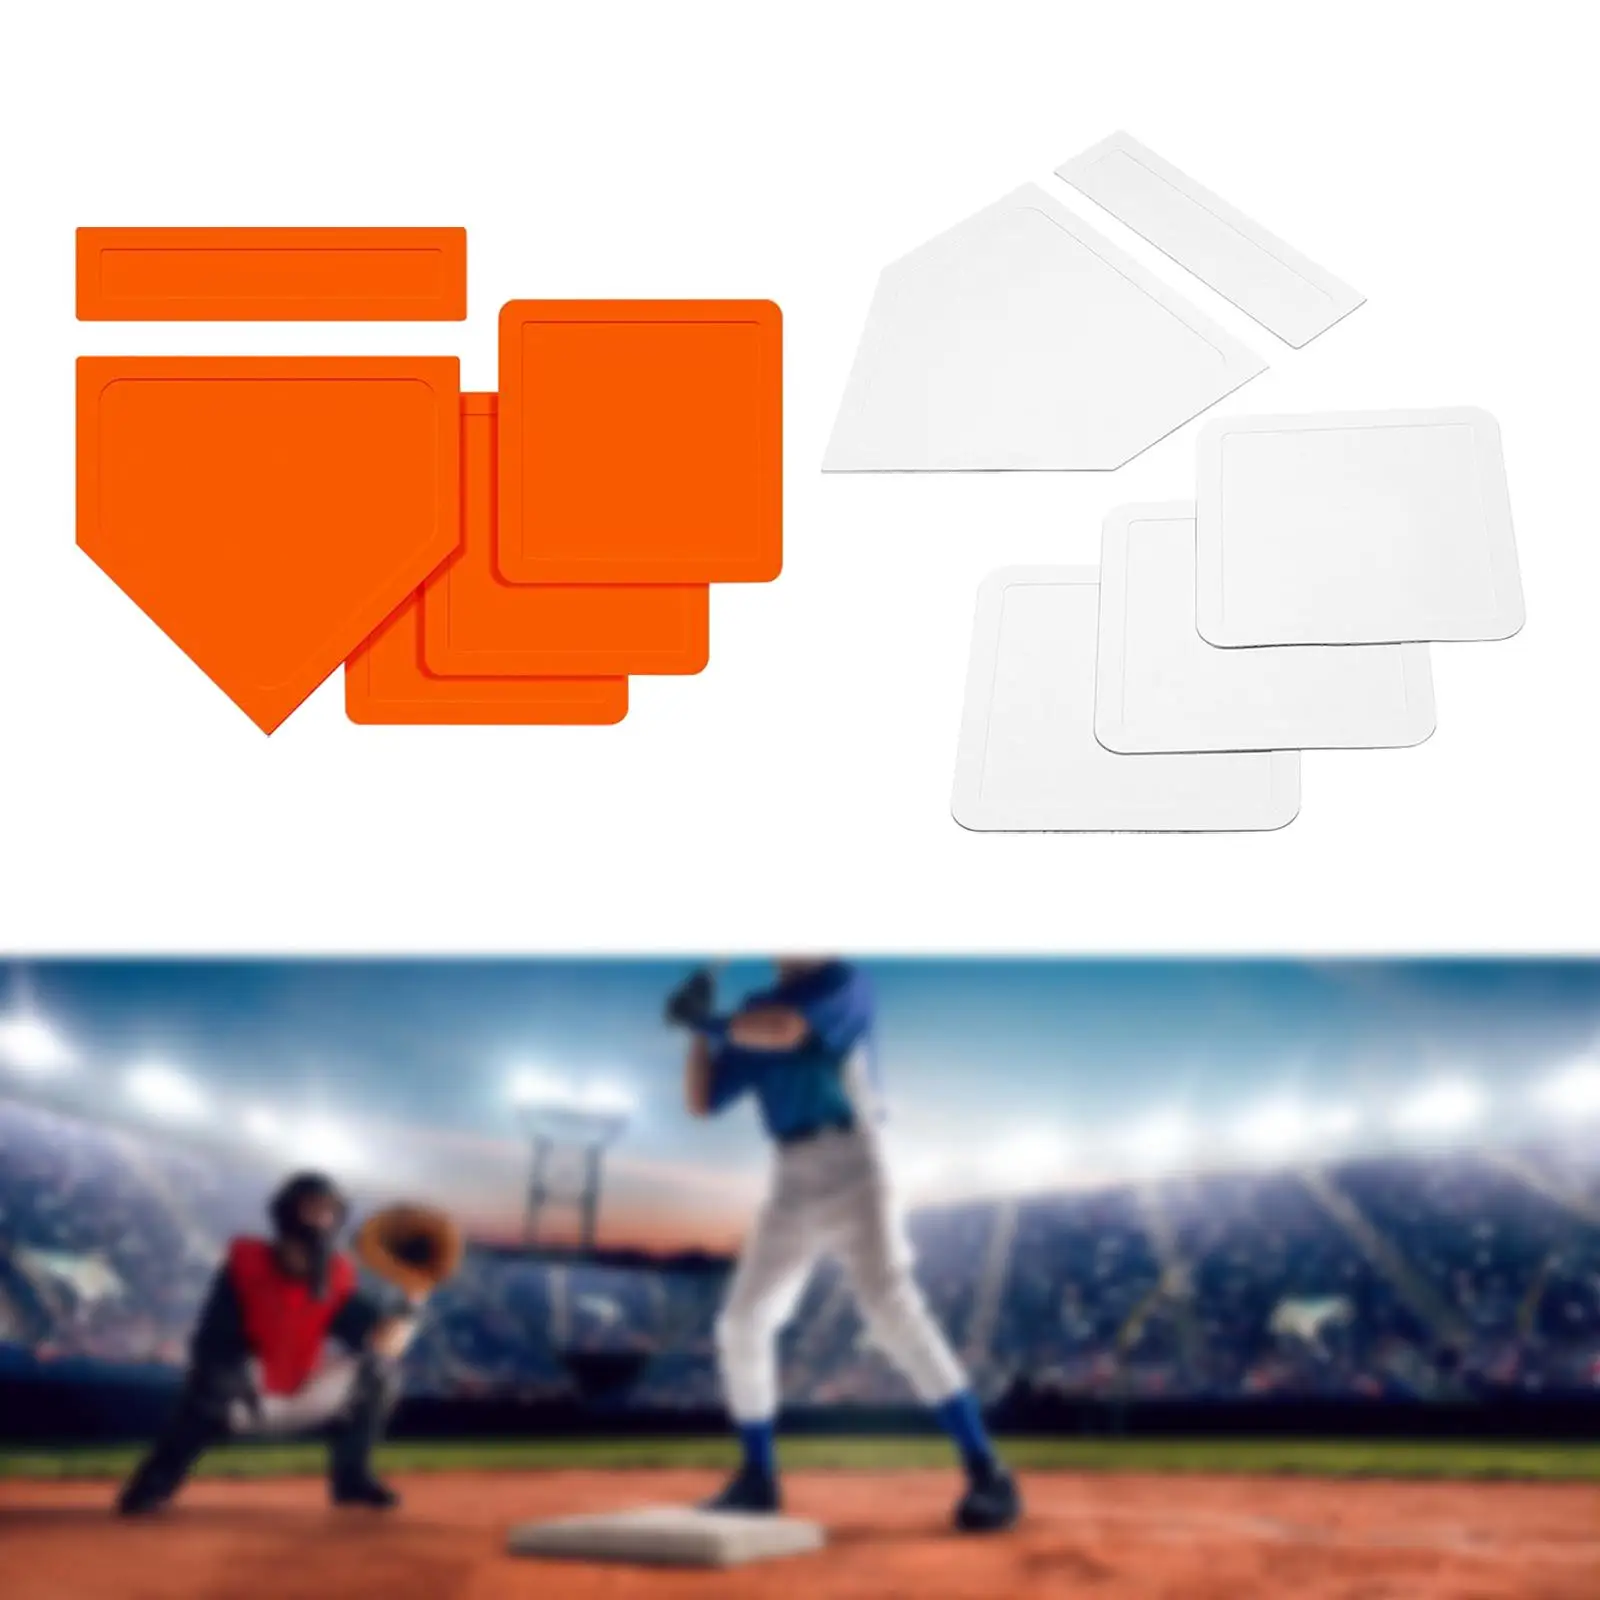 Baseball Softball Base Set Portable Home Plate Exercise for Kids Adults Throw Down Baseball Bases for Softball Teeball Baseball